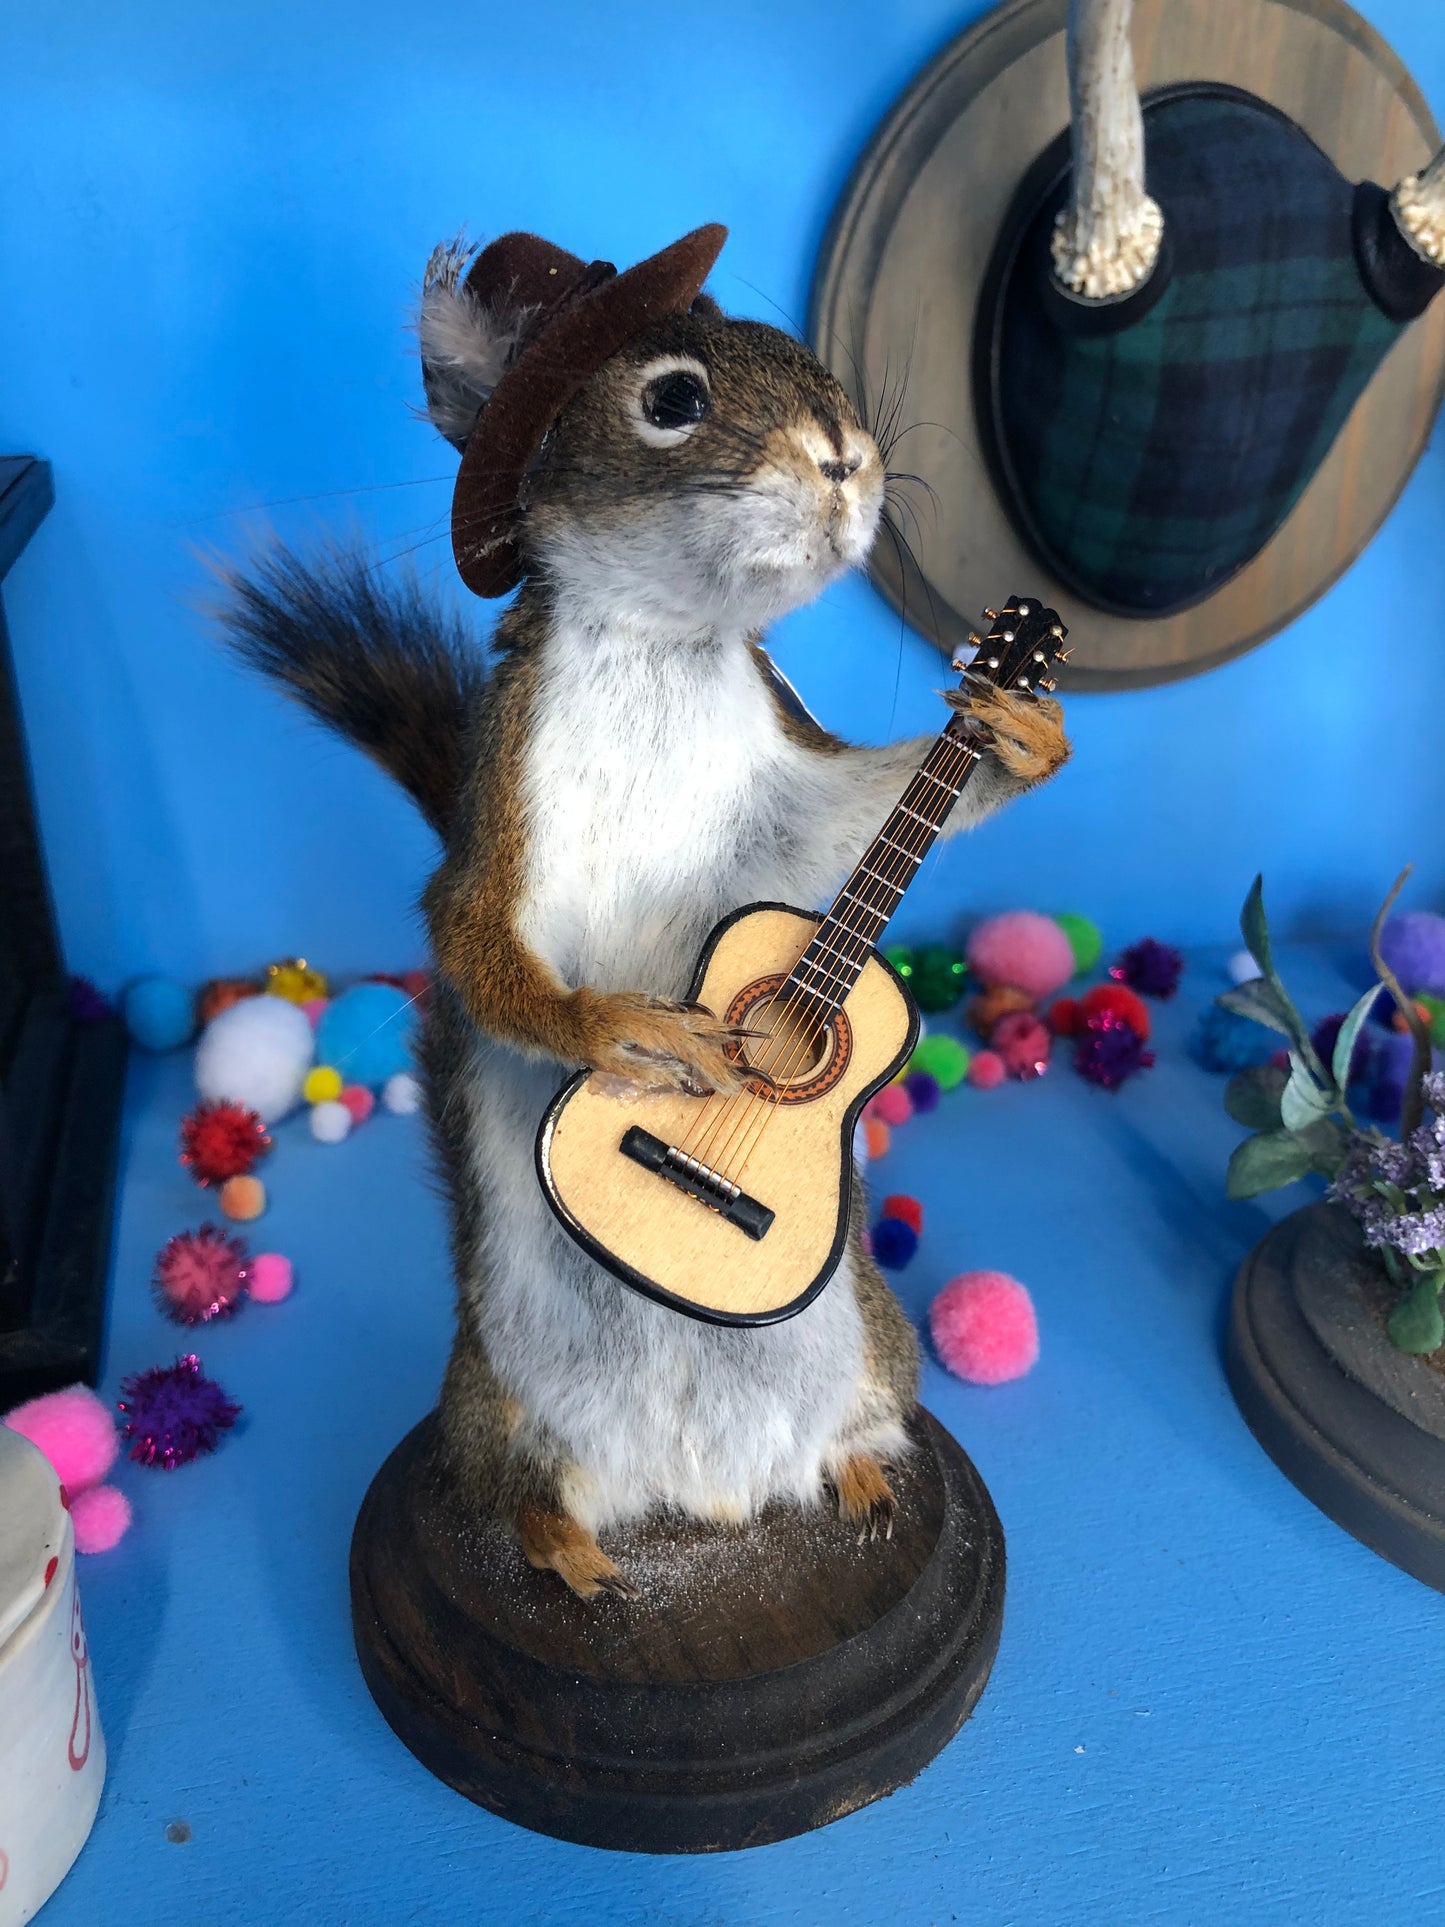 The Minstrel Squirrel Taxidermy by Nikki Deerest